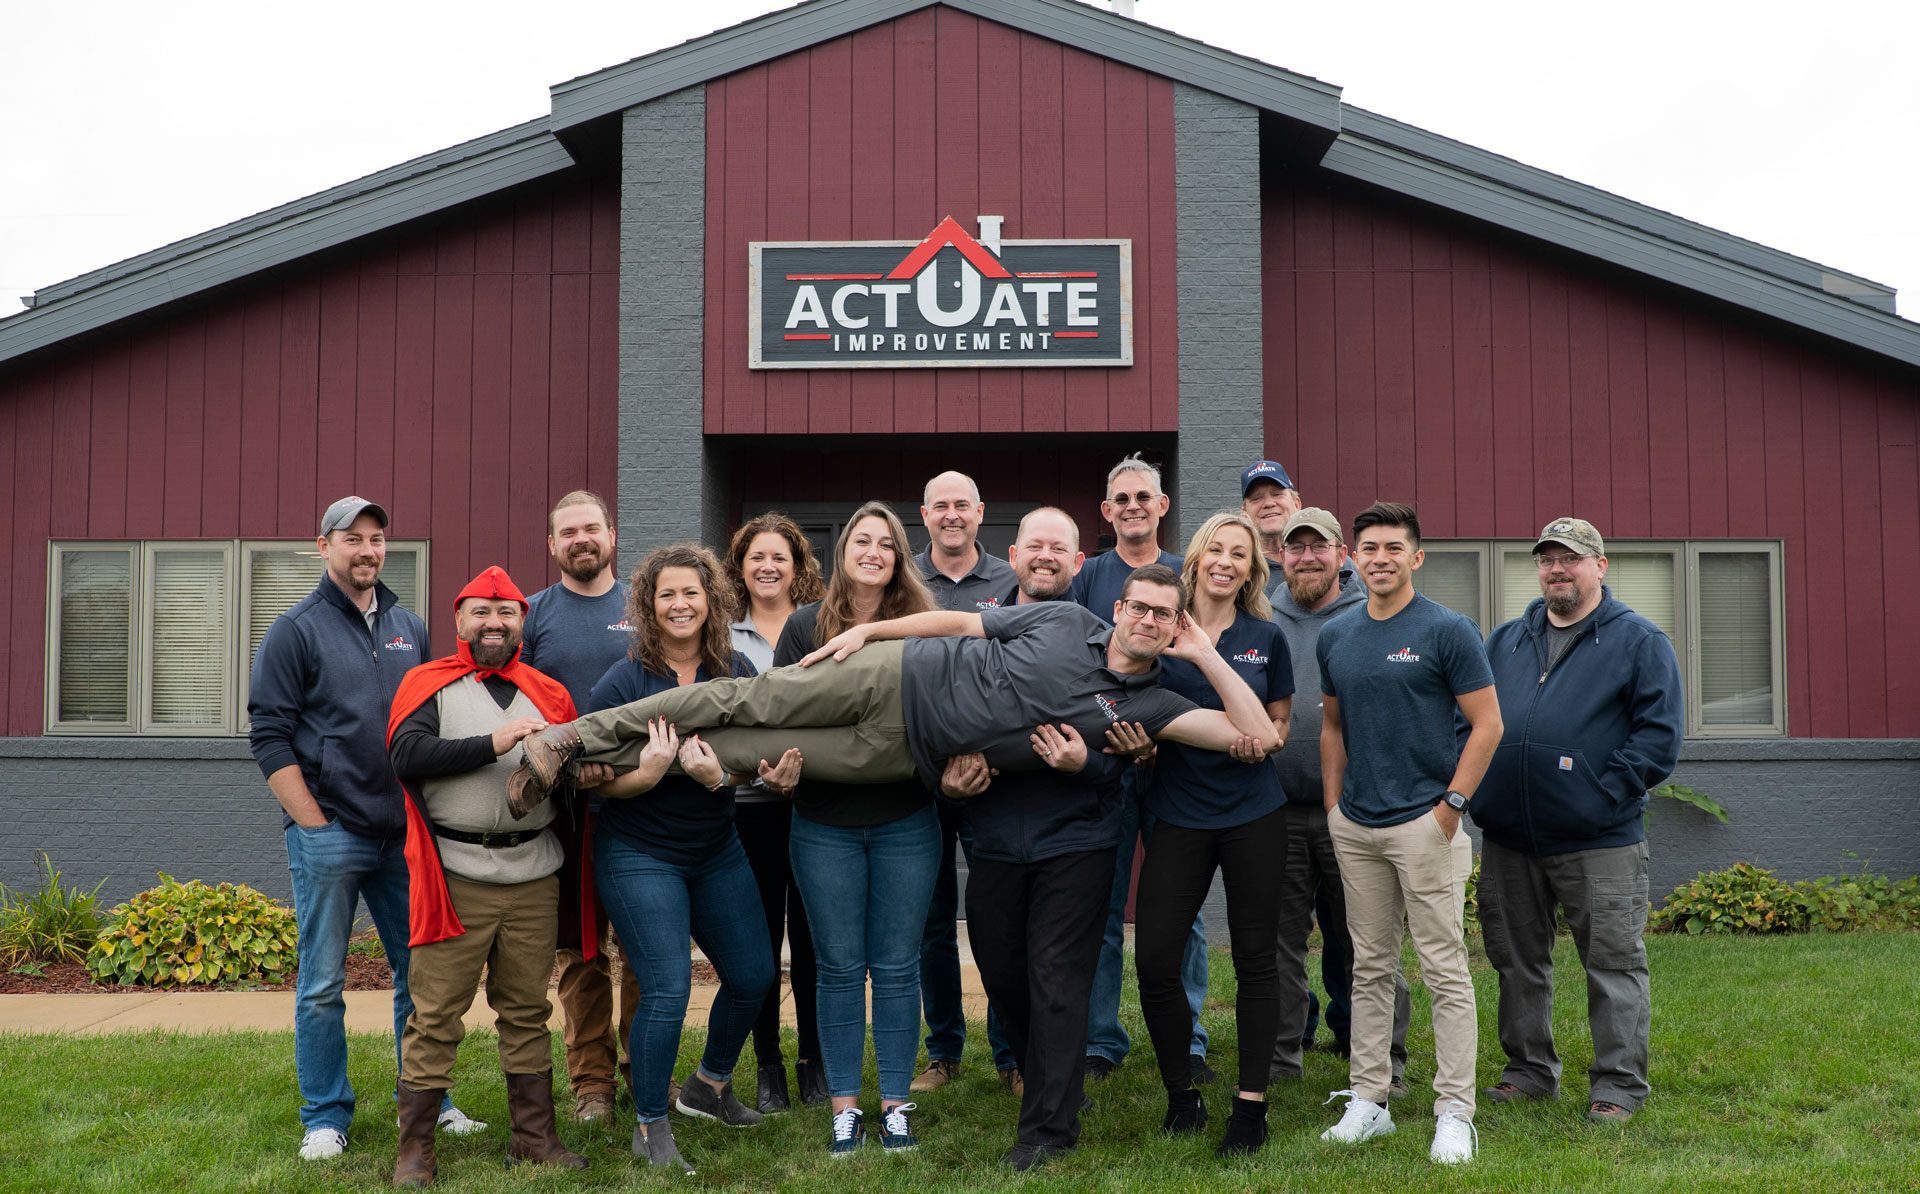 actuate-improvement-team-photo